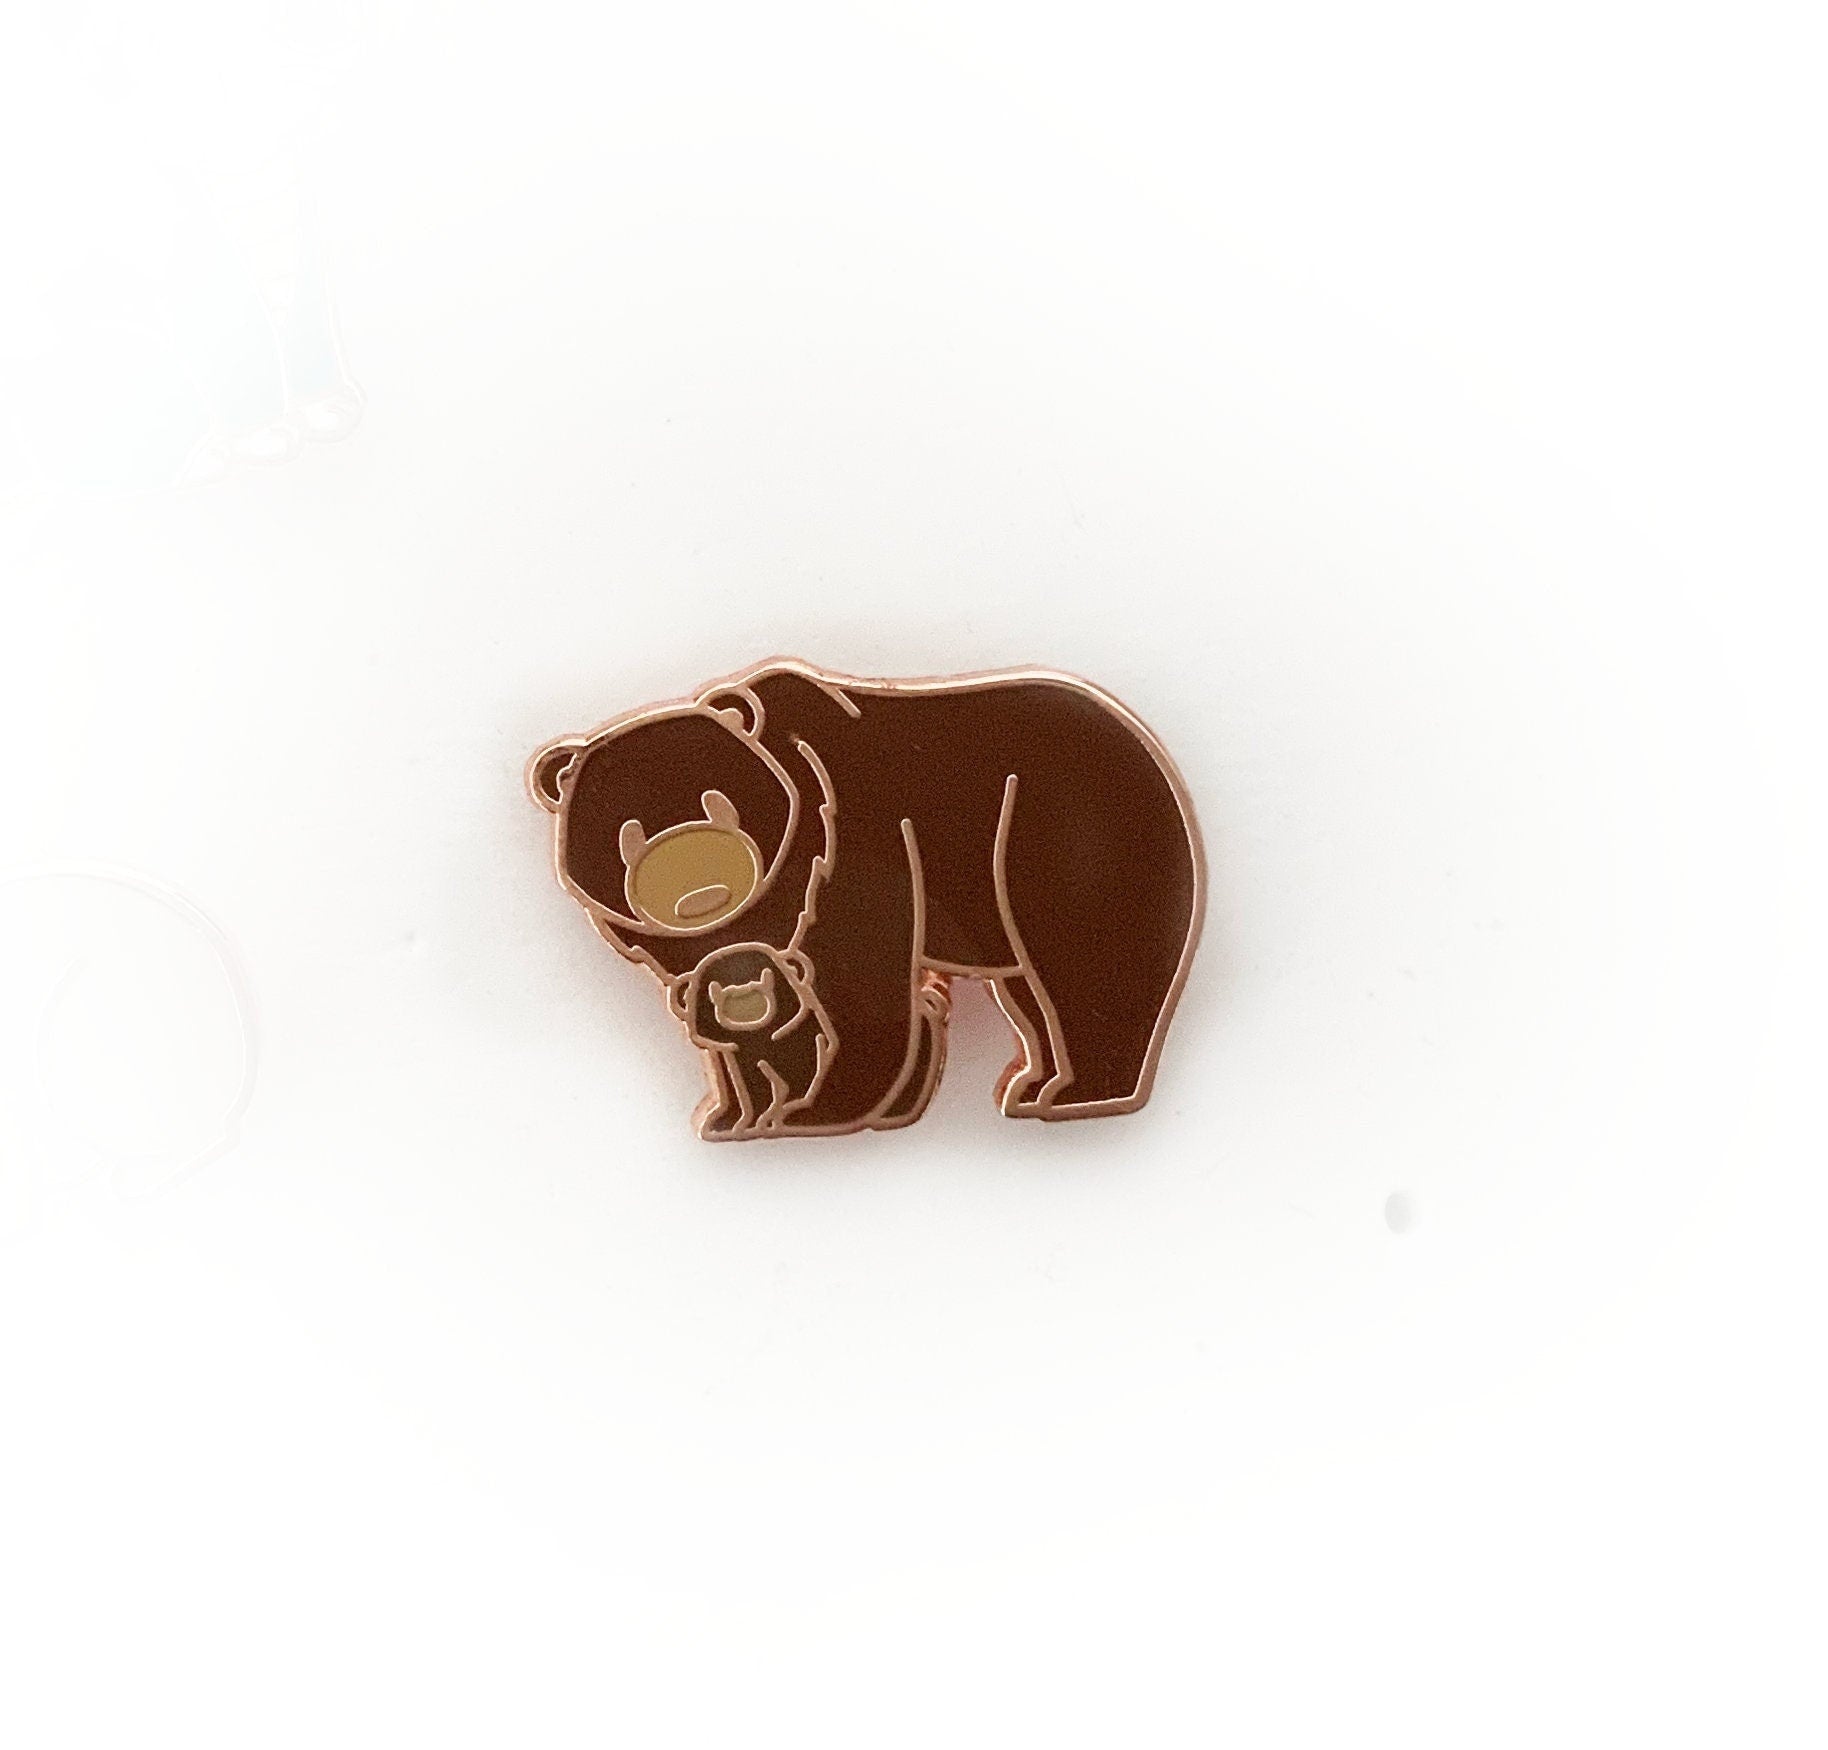 Papa Bear and Baby Bear - Bear Hug 0.75&quot; - Small Enamel Pin, Pins,